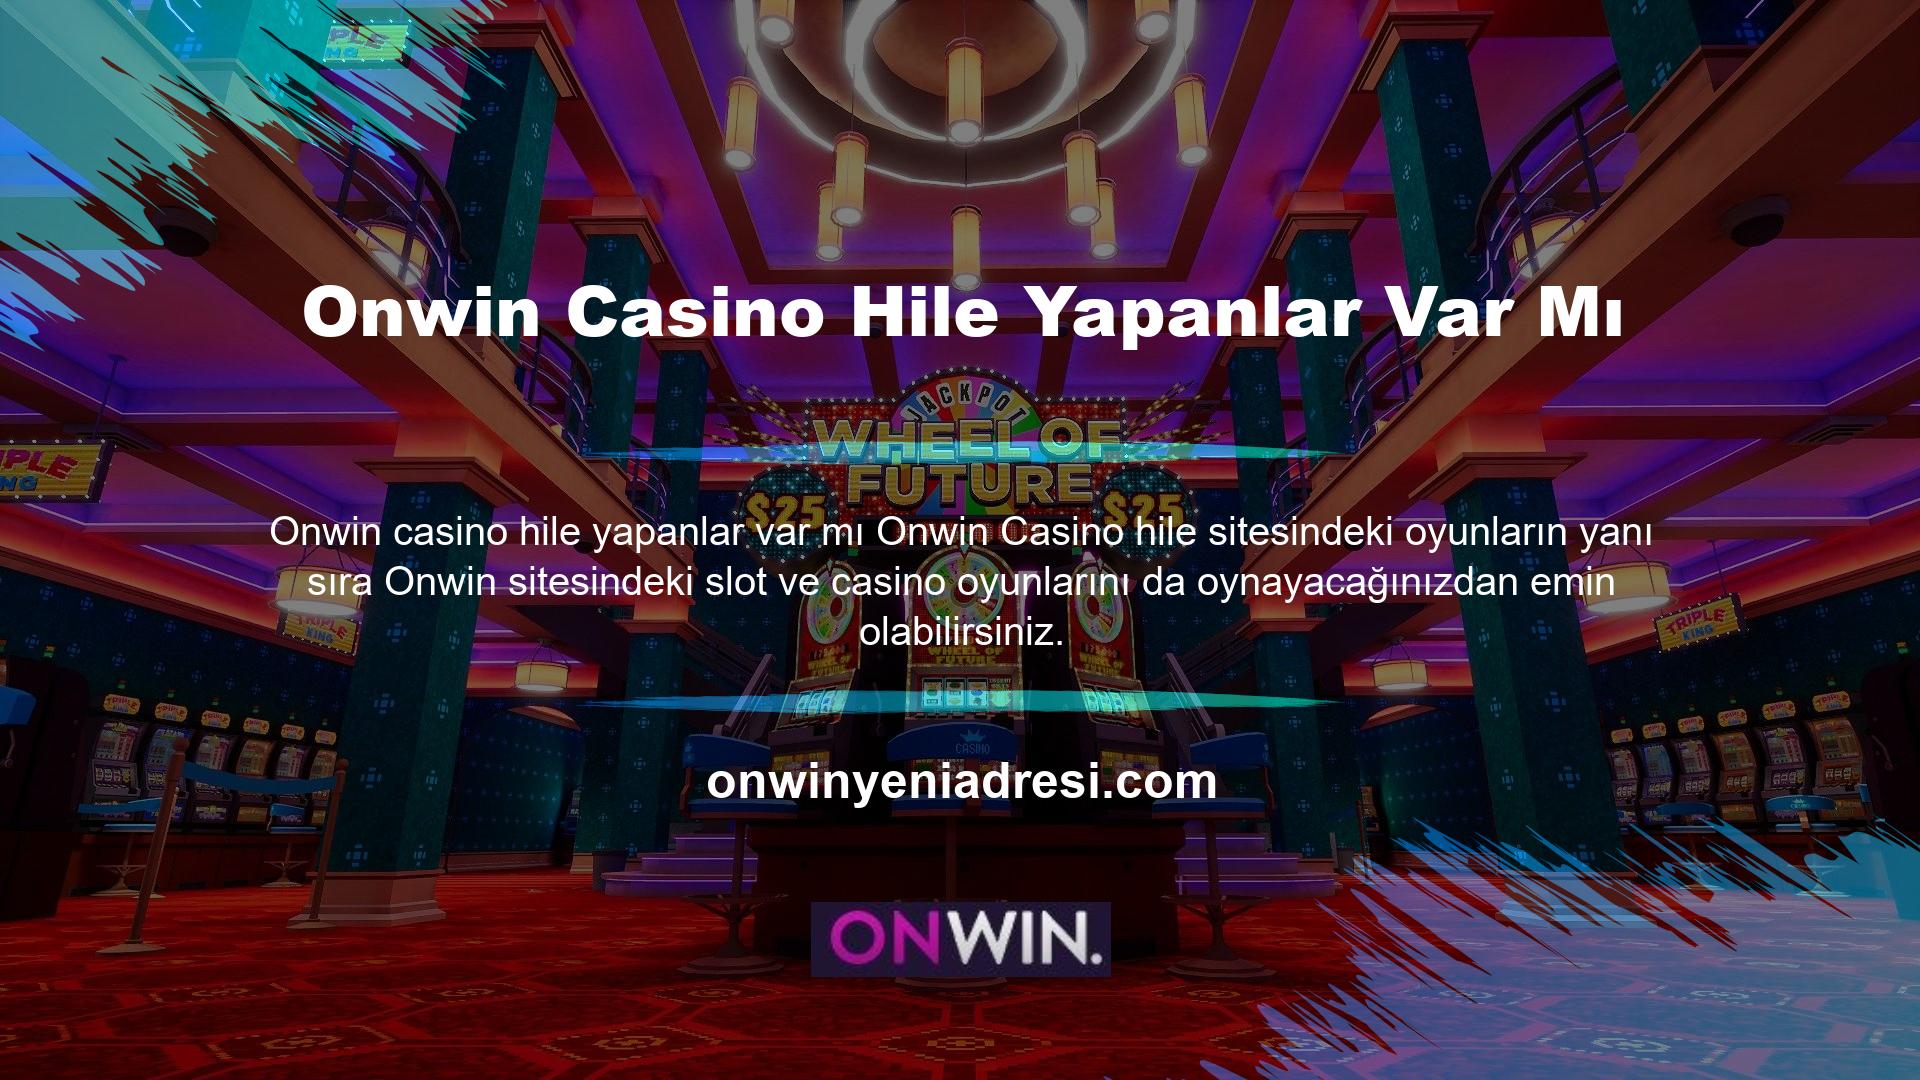 Onwin Casino hileleri var mı? Onwin slot hileleri var mı? Bunun gibi soruları yanıtlamak, özgür, açık, şeffaf ve adil oyun anlayışınızı doğrular